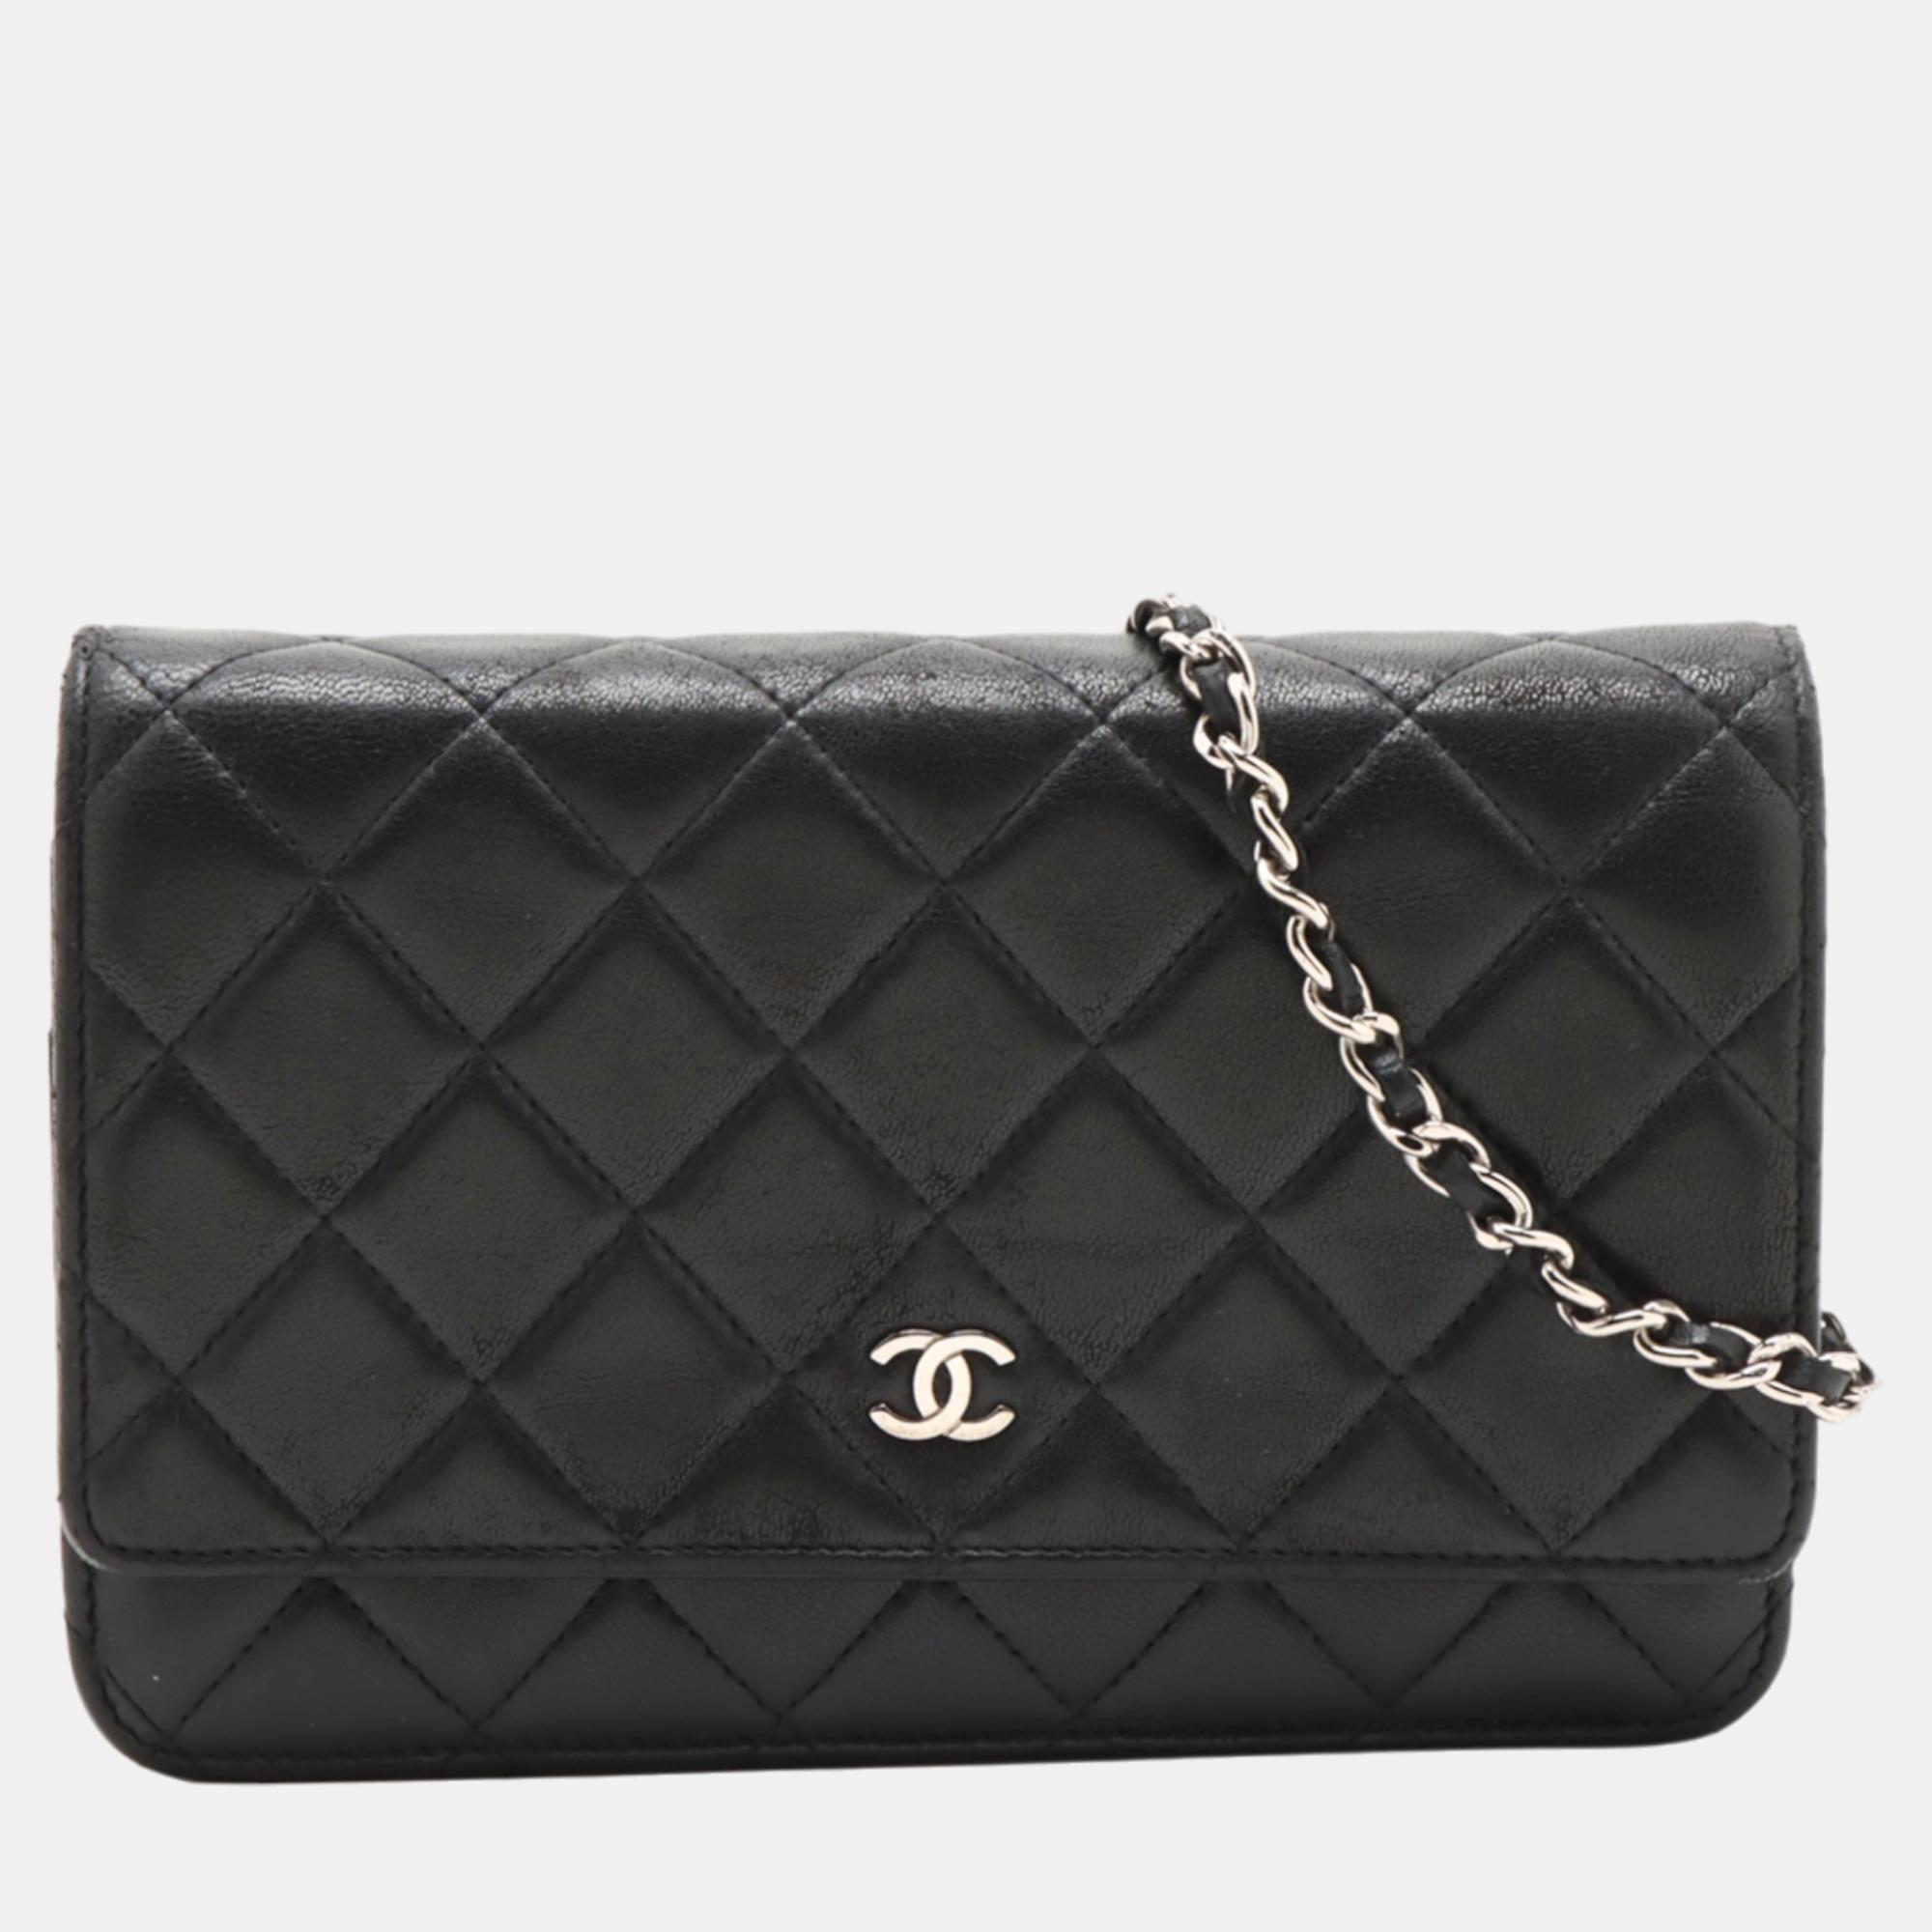 Chanel black lambskin wallet on chain